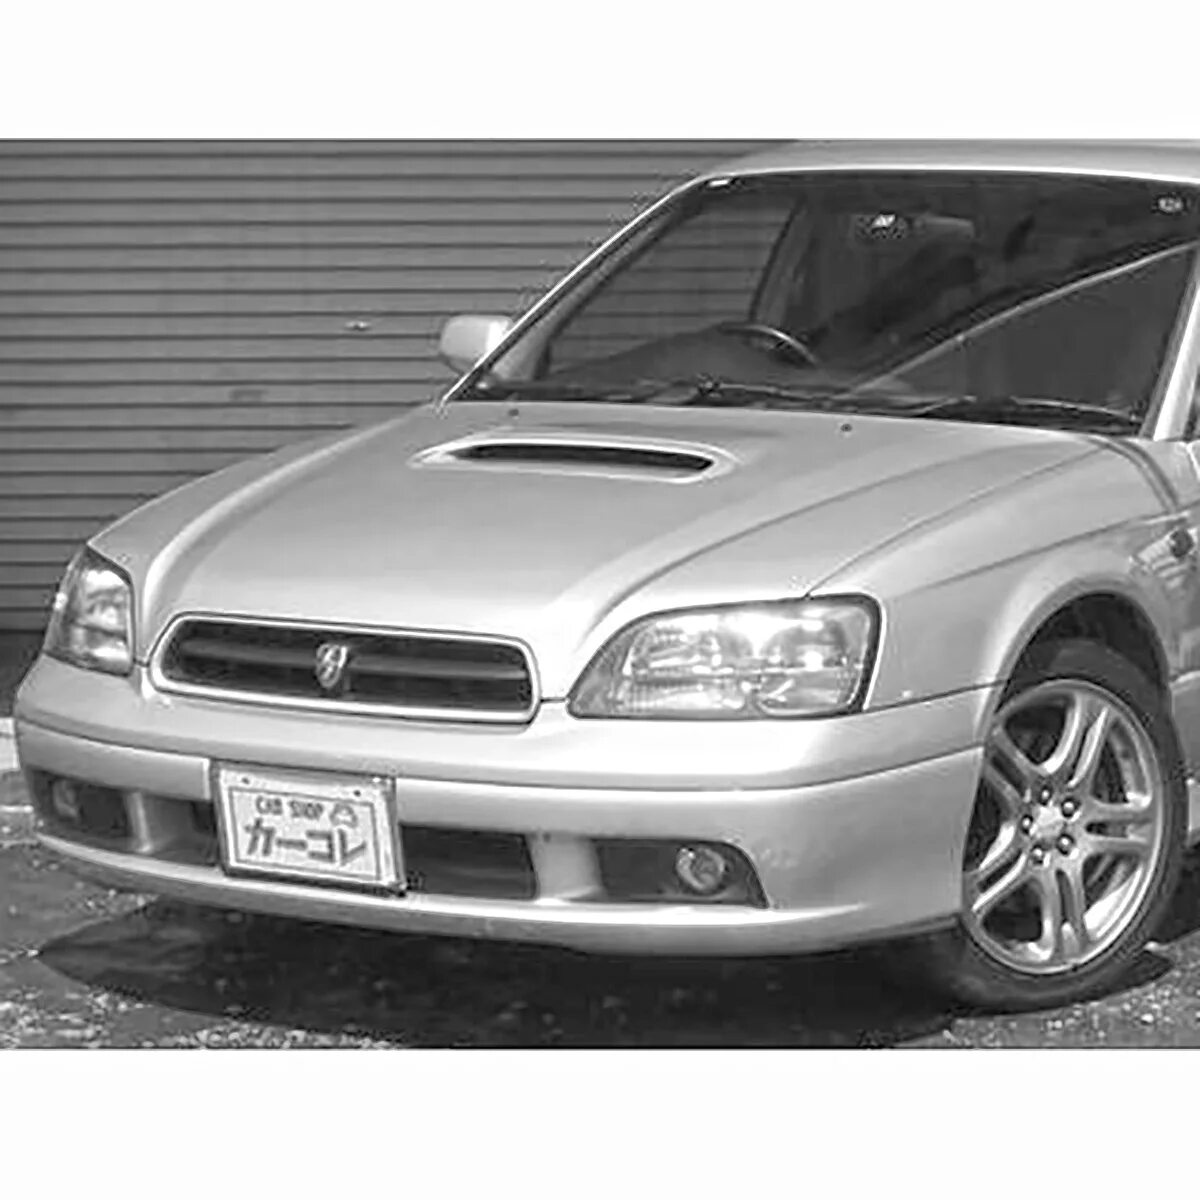 Капот субару легаси. Subaru Legacy 97. Турбо капот Legacy be5. Subaru Legacy bf турбо капот. Капот Субару Легаси 1997 года с подписью.